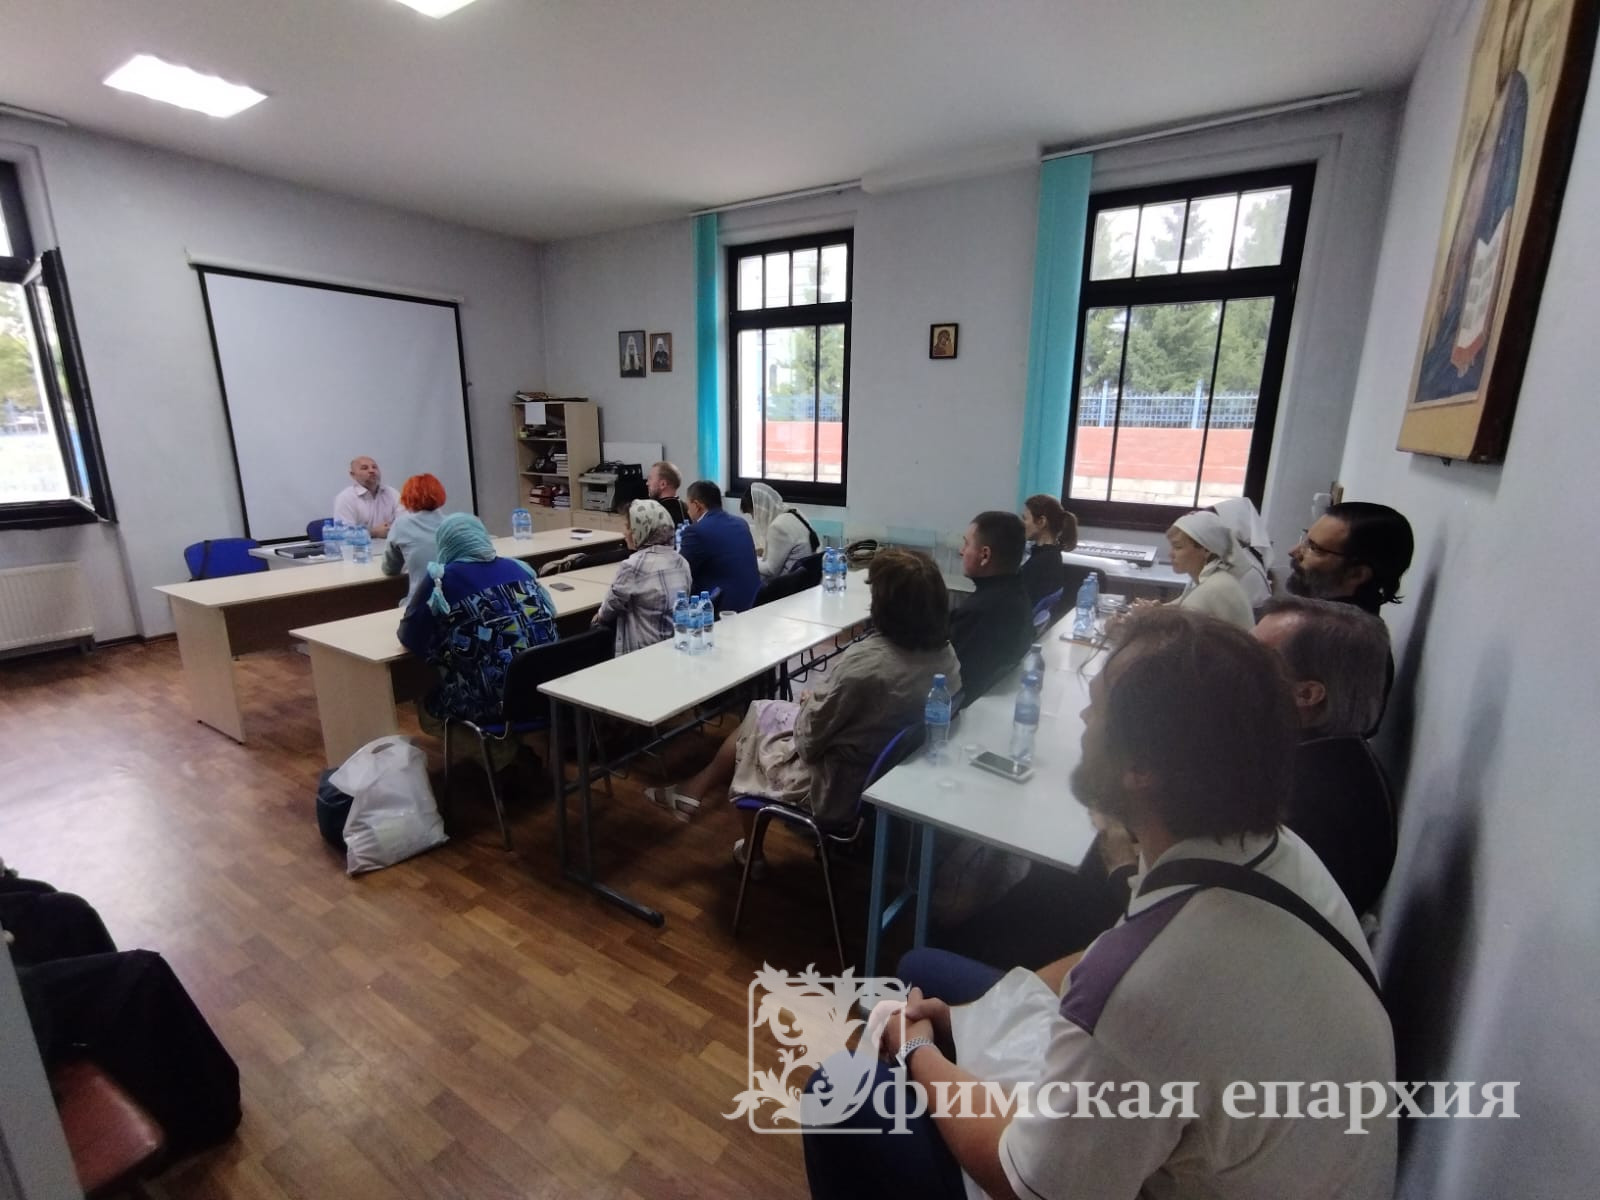 Андрей Якунин проводит семинар по помощи бездомным в Уфимской епархии